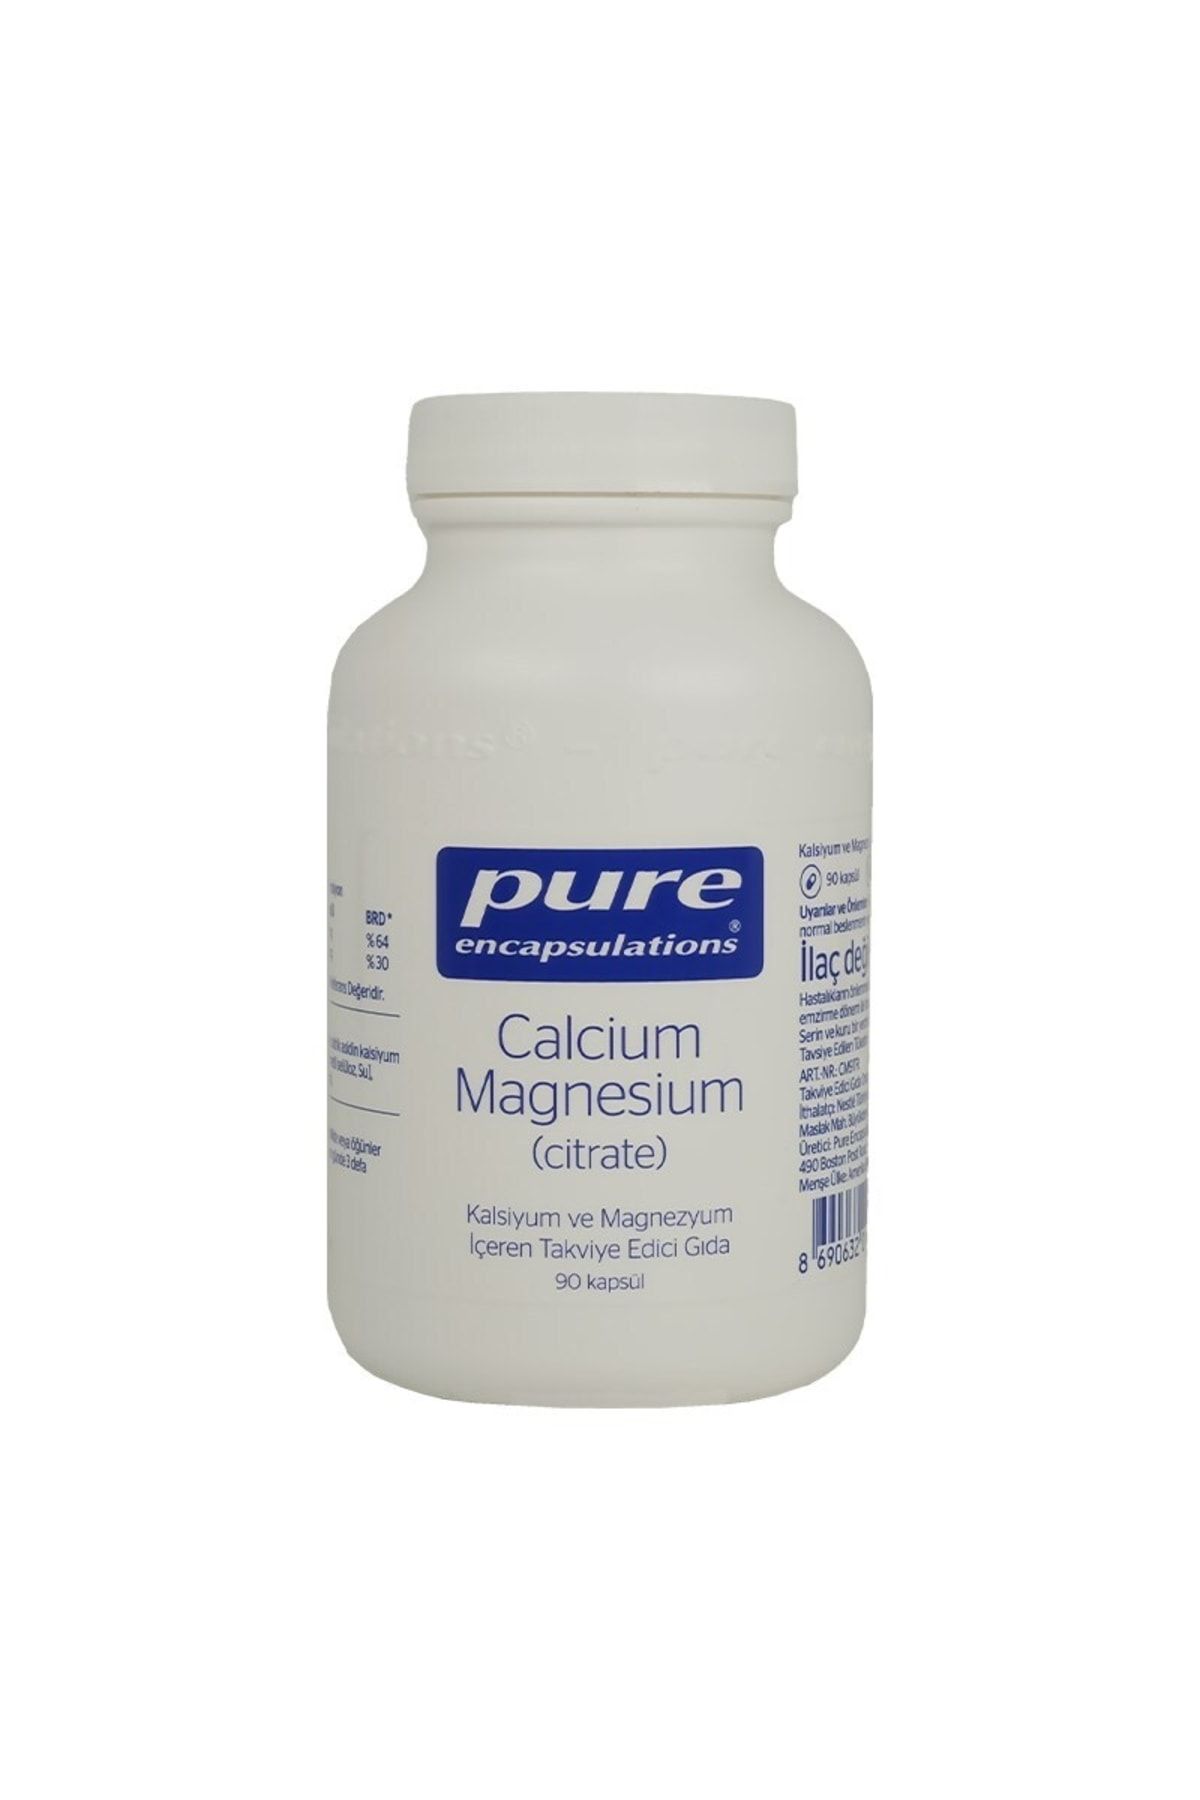 Pure Encapsulations Calcium Magnesium (citrate) 90 Kapsül